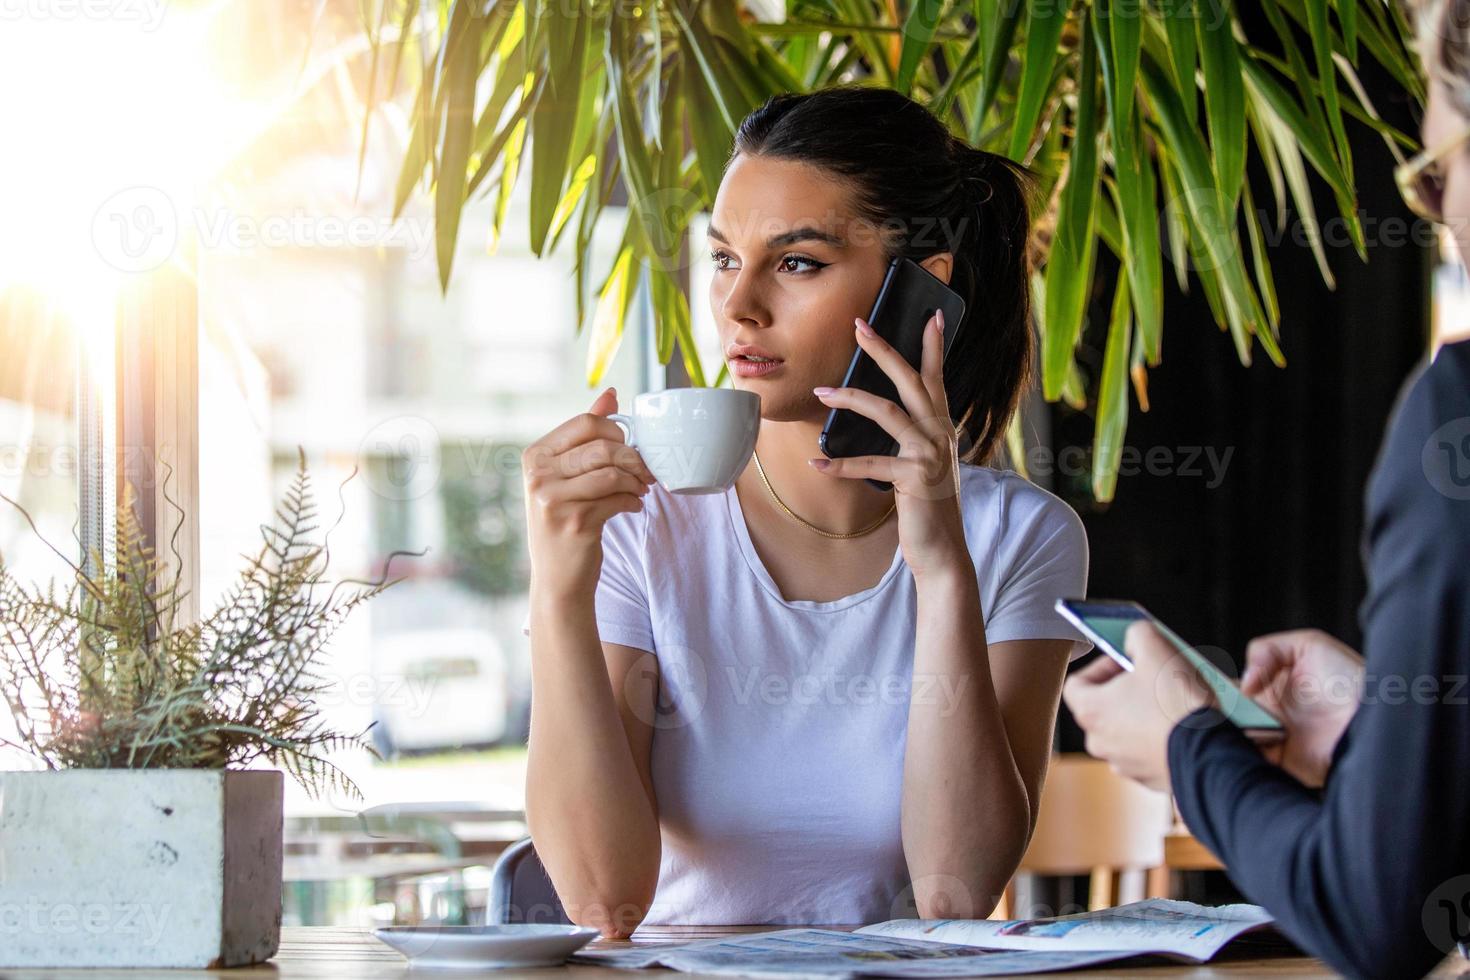 jovem mulher encantadora ligando com telefone celular enquanto está sentado na cafeteria durante o tempo livre, mulher atraente com sorriso fofo conversando com o celular enquanto descansa no café foto